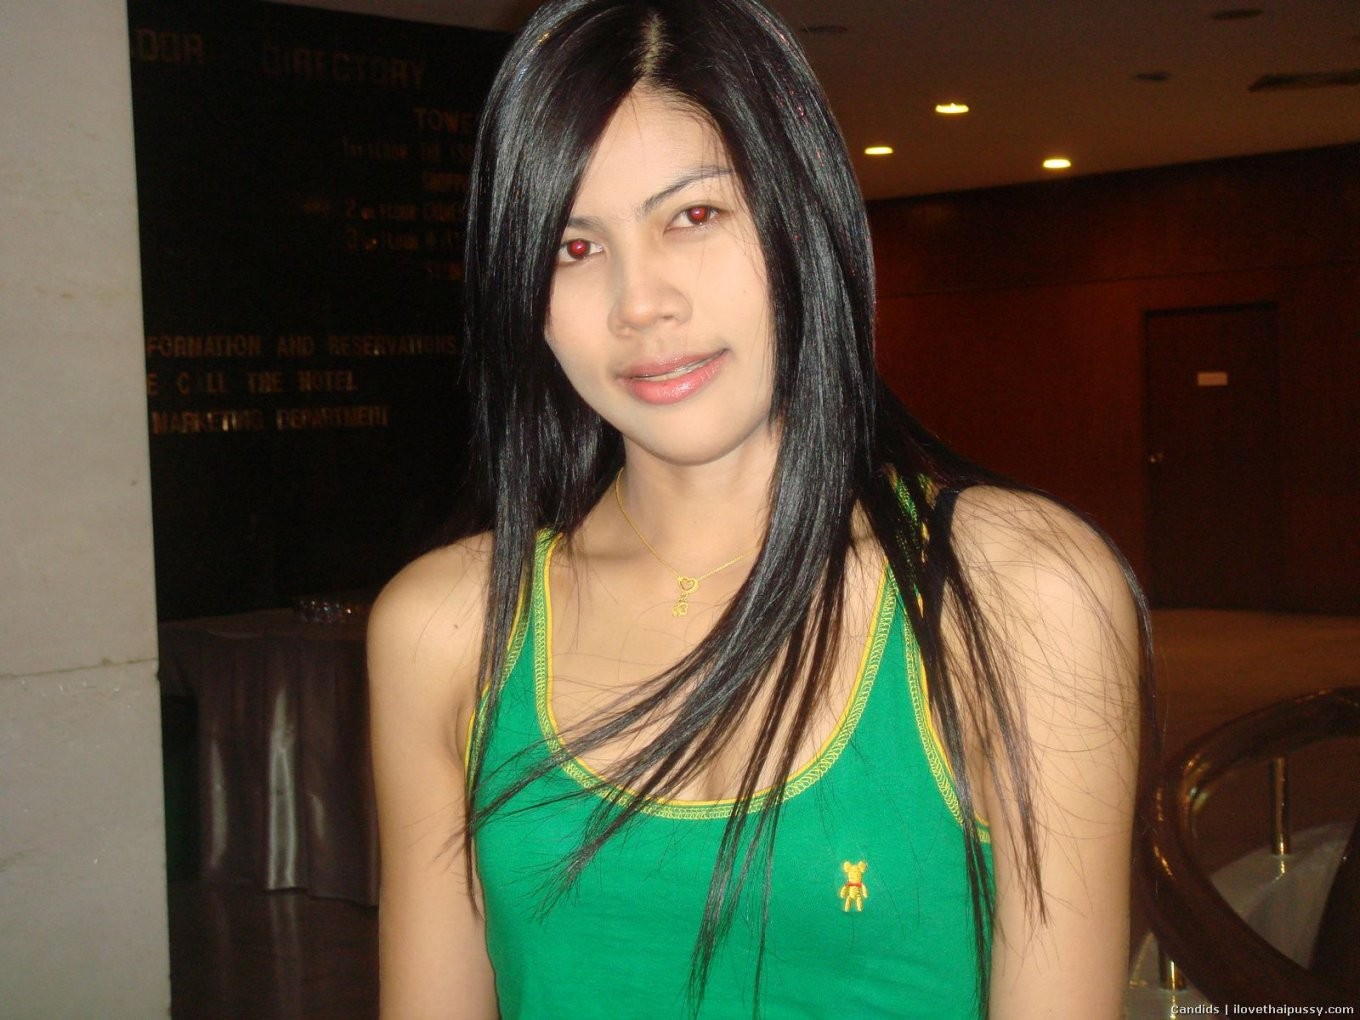 Une prostituée thaïlandaise dégoûtante aime le sexe anal sans préservatif avec des touristes asiatiques sales.
 #68115704